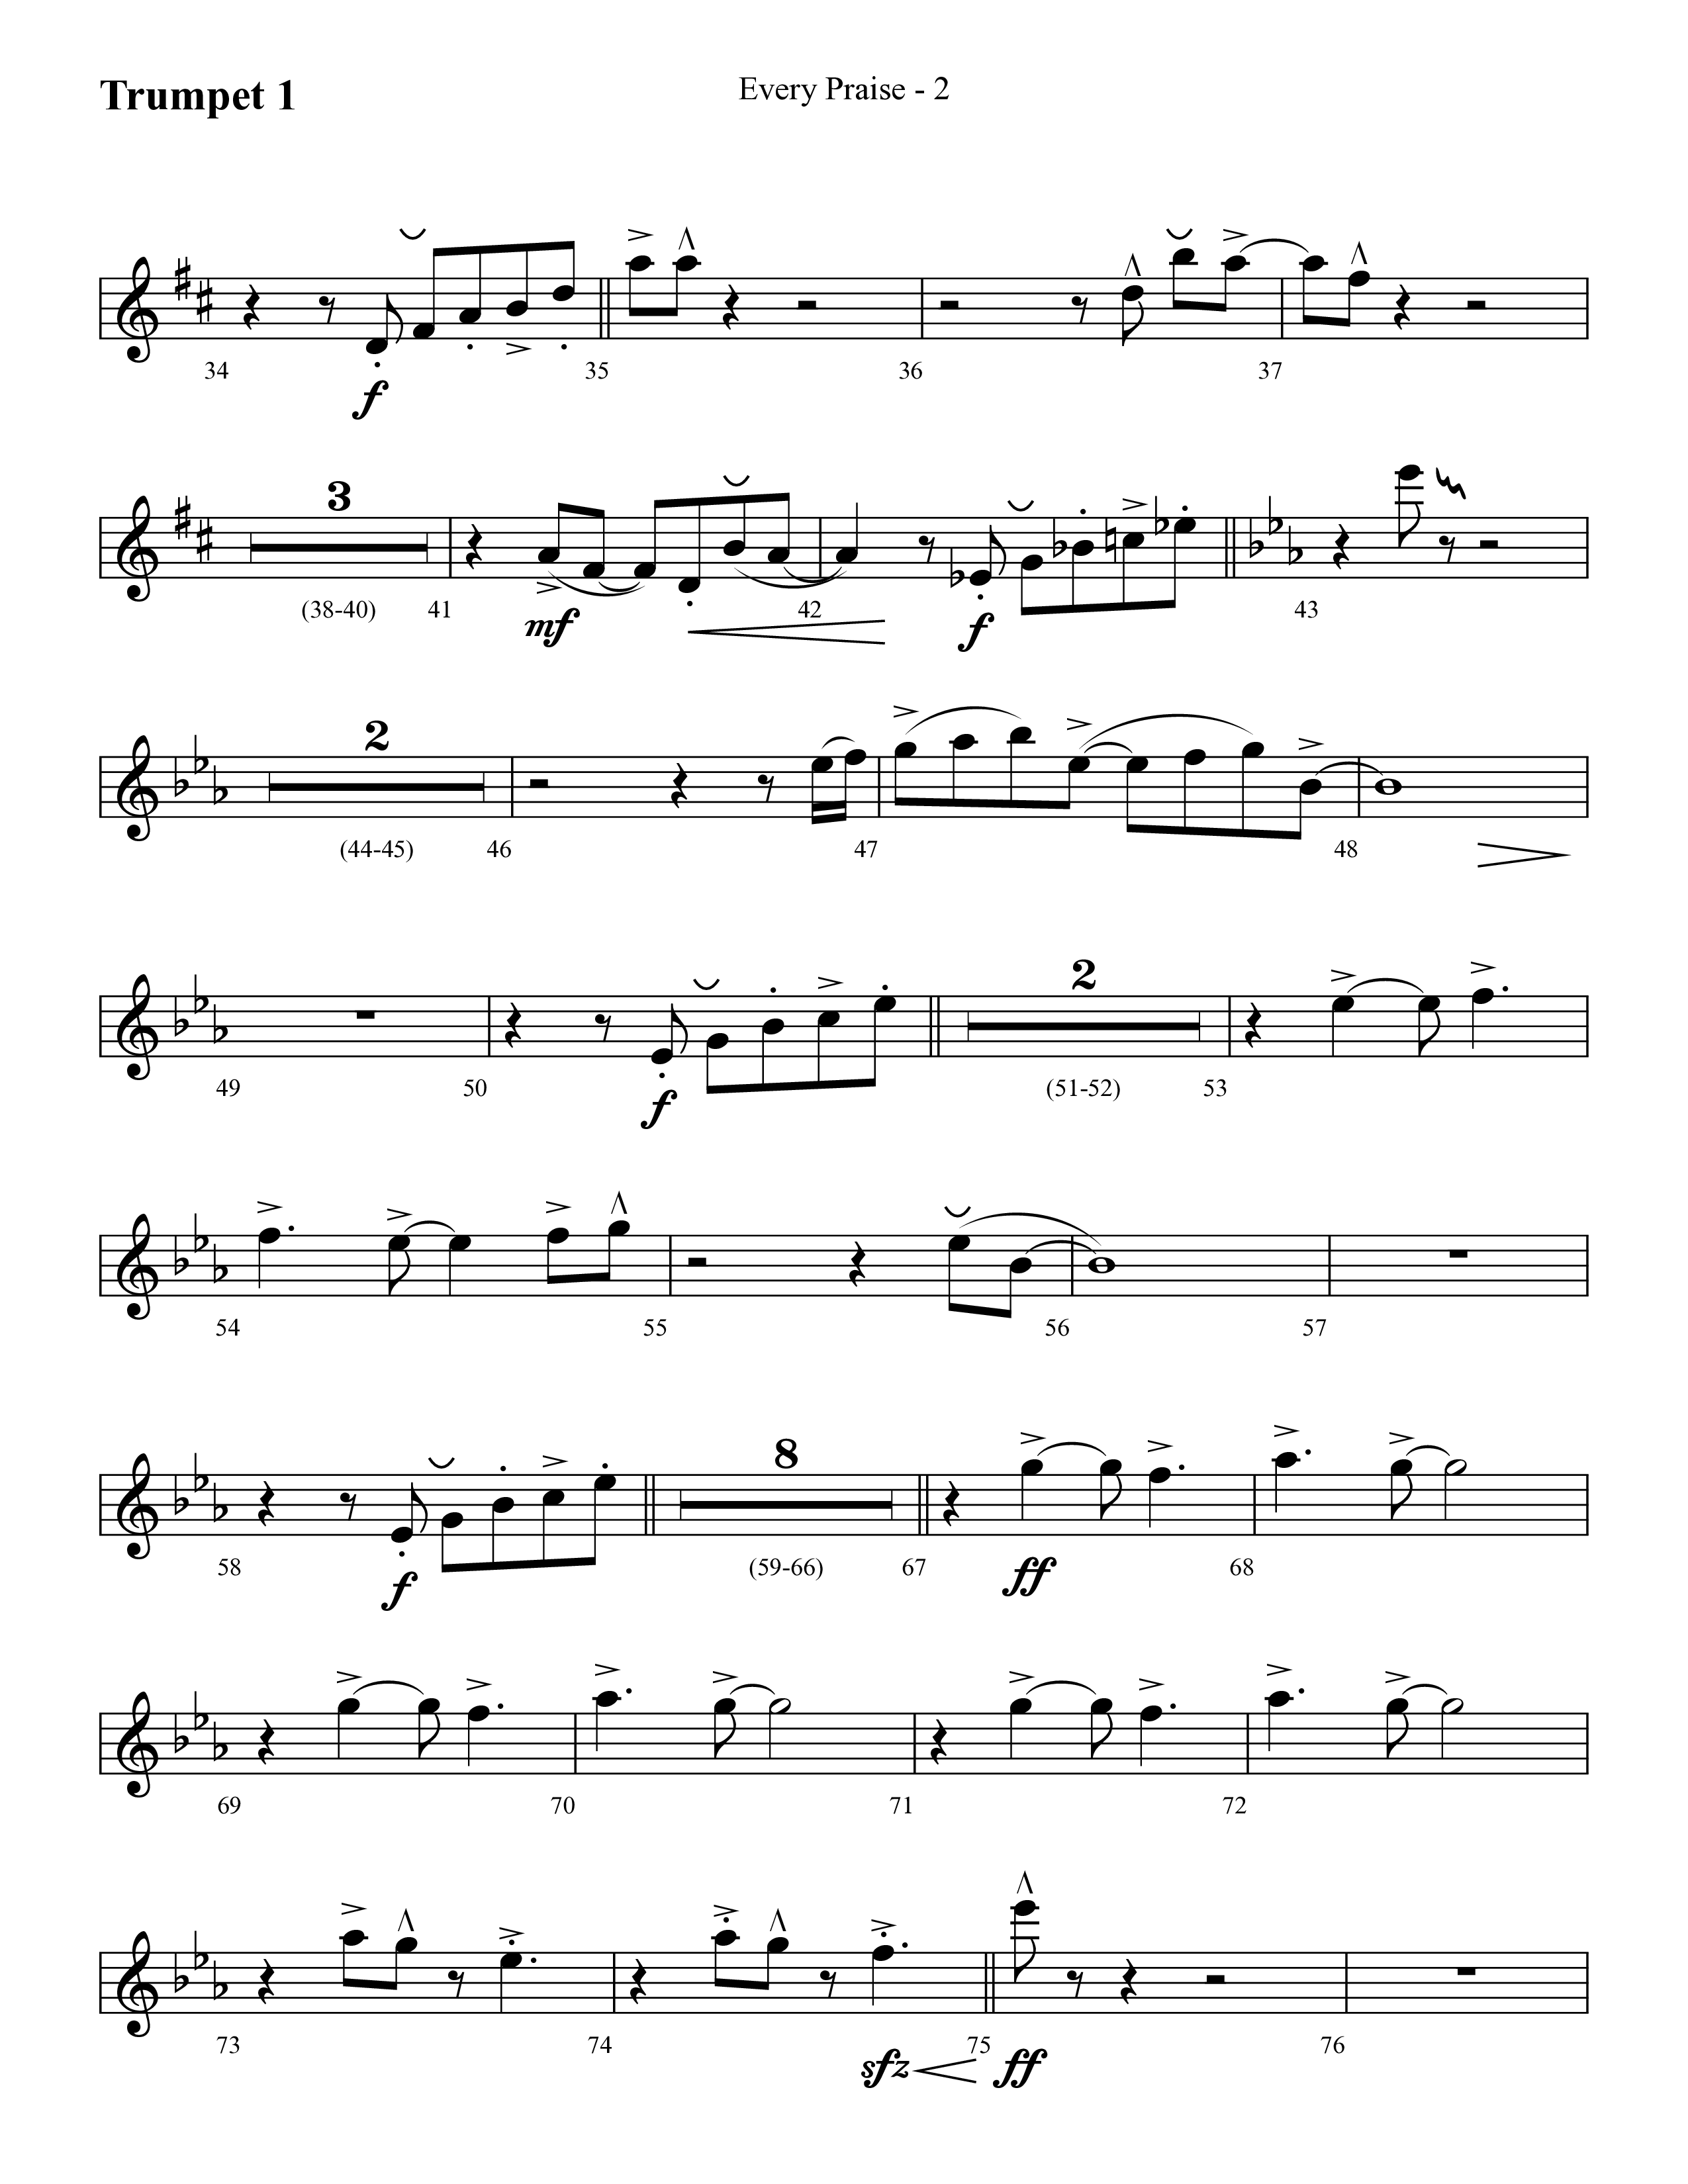 Every Praise (Choral Anthem SATB) Trumpet 1 (Lifeway Choral / Arr. Cliff Duren)